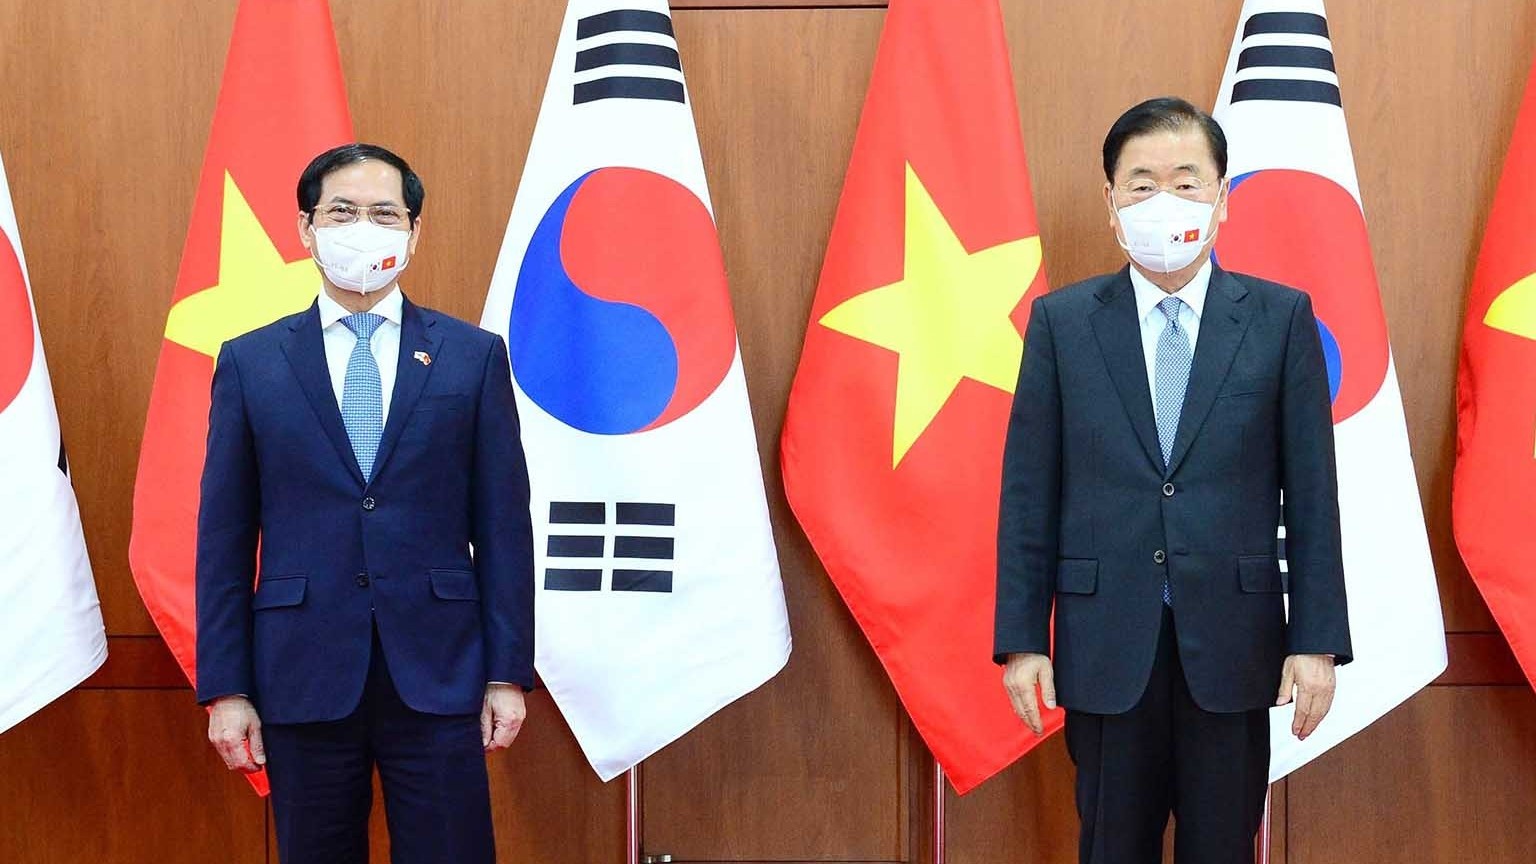 Bộ trưởng Ngoại giao Bùi Thanh Sơn thăm chính thức Hàn Quốc: Củng cố nền tảng vững chắc, mở ra triển vọng tốt đẹp